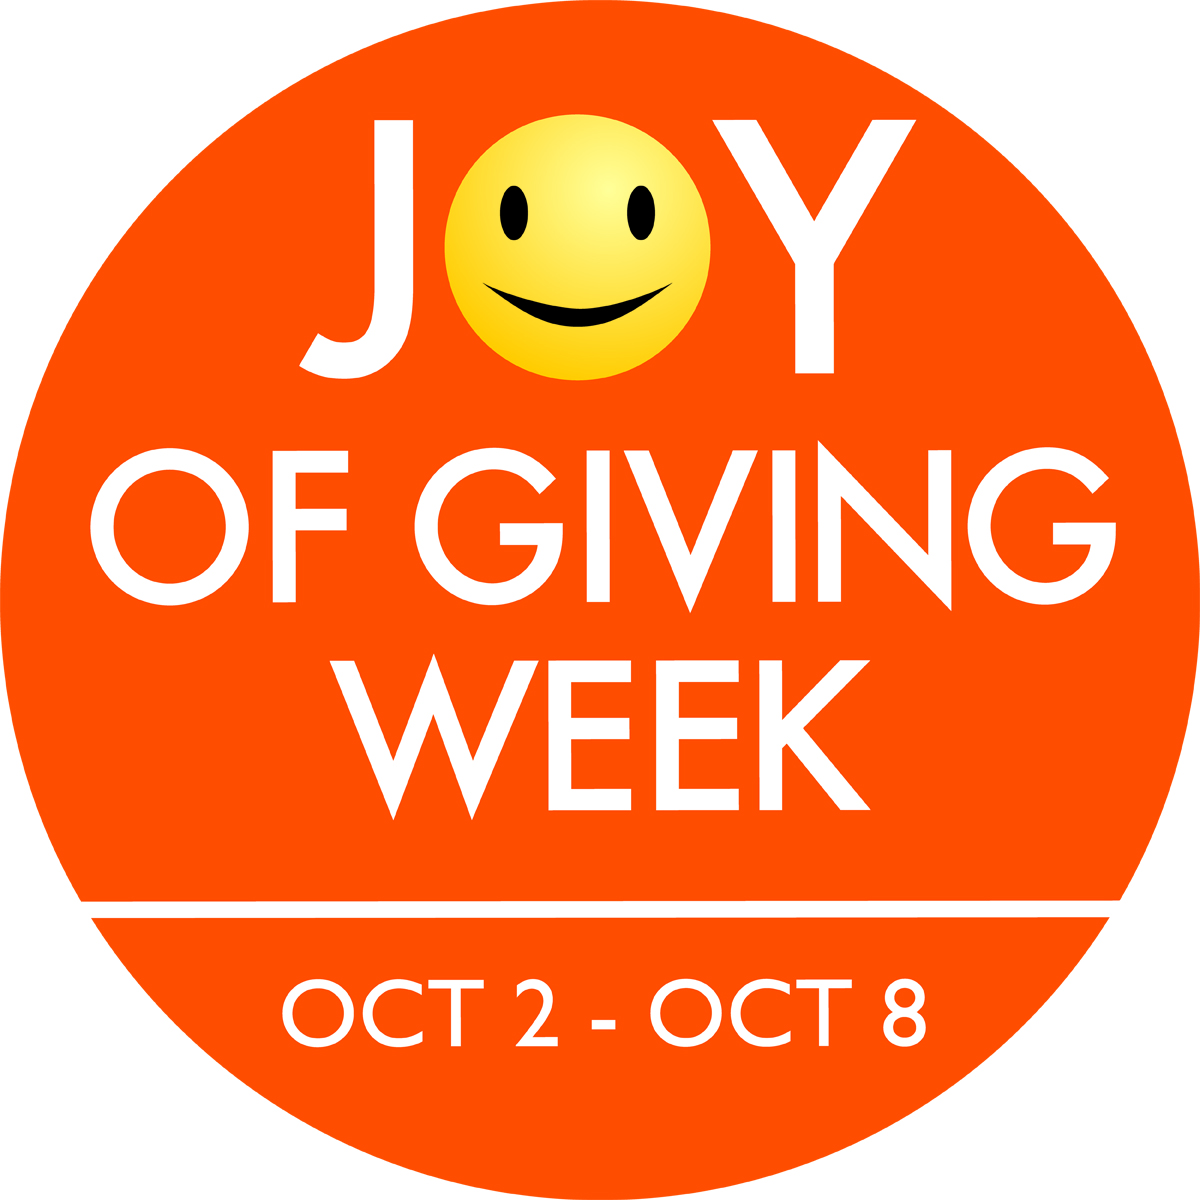 Joy Of Giving